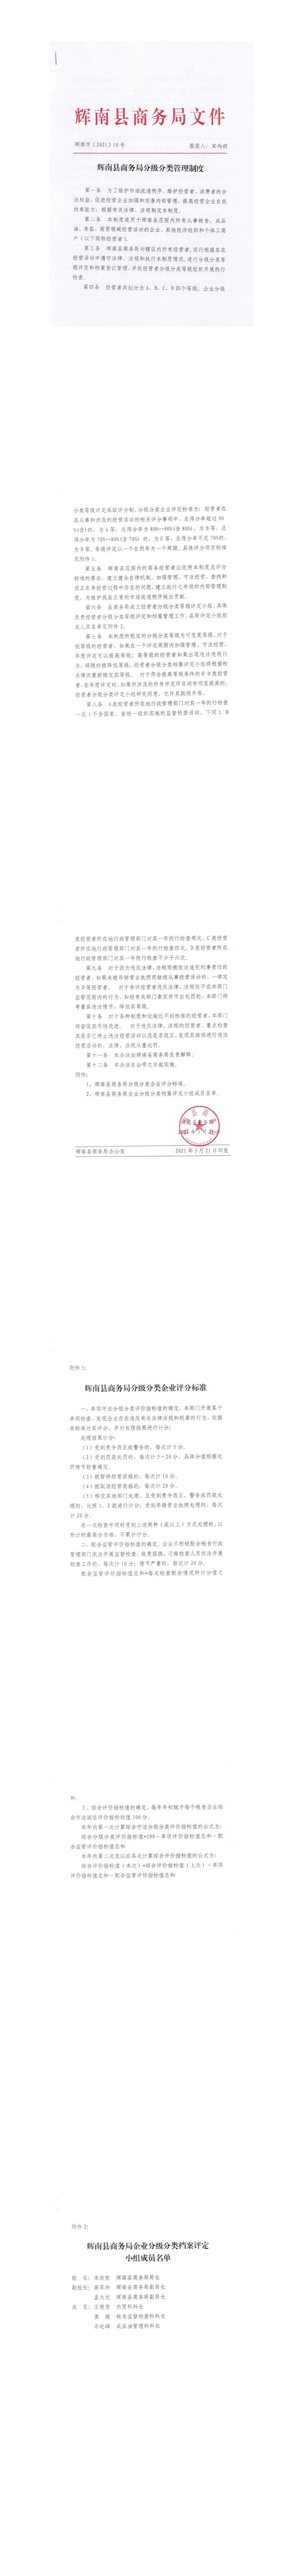 辉南县商务局分级分类管理制度.jpg